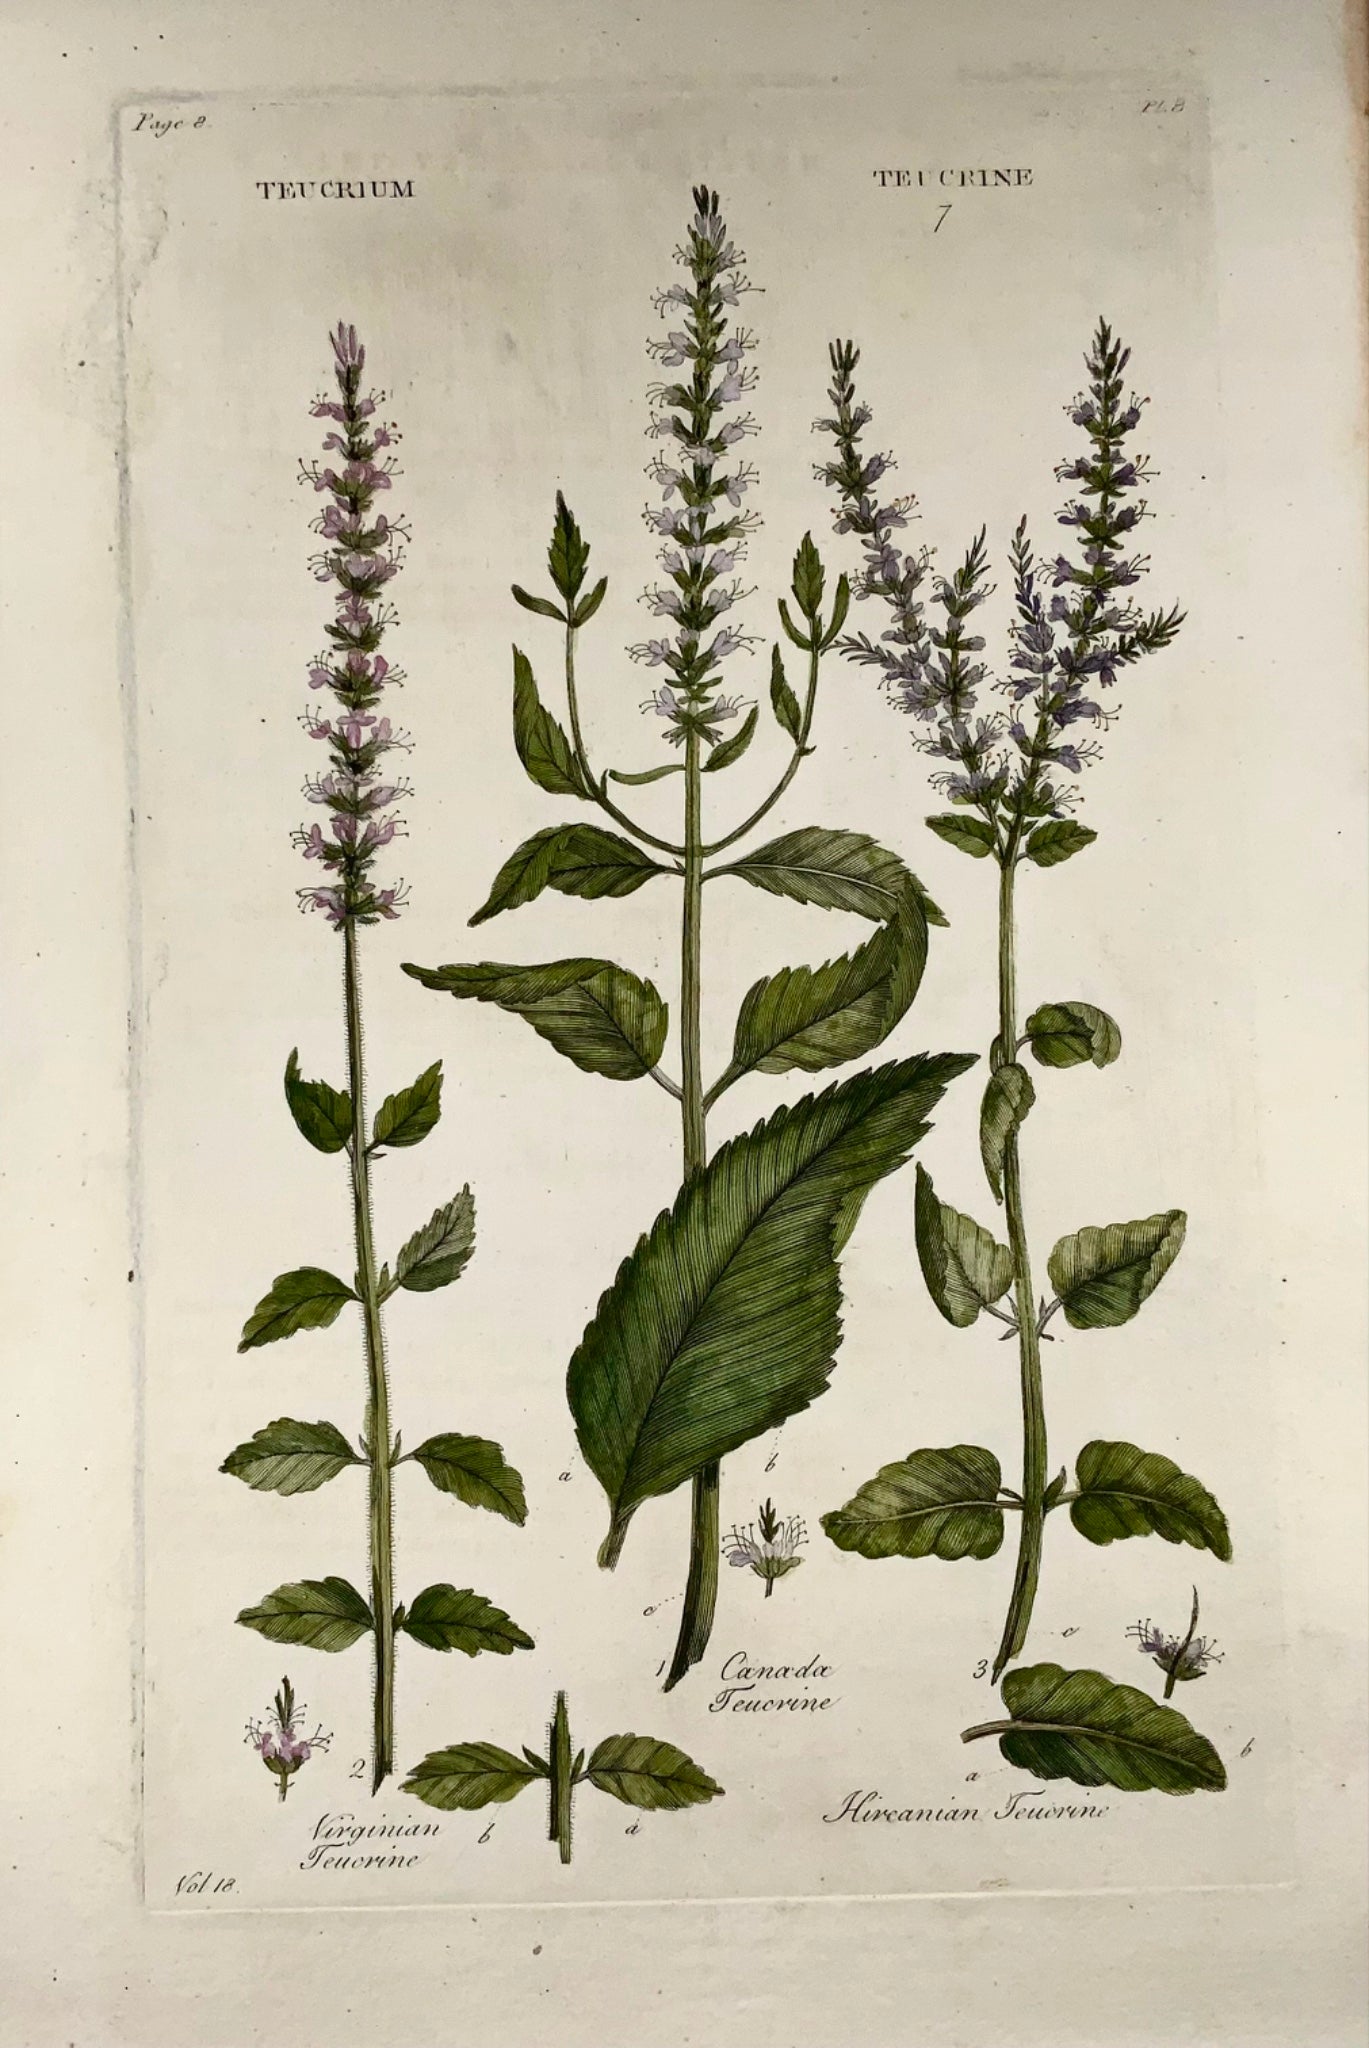 1739 American Tree Germ, grand folio, Hill, couleur de la main, système végétal, botanique